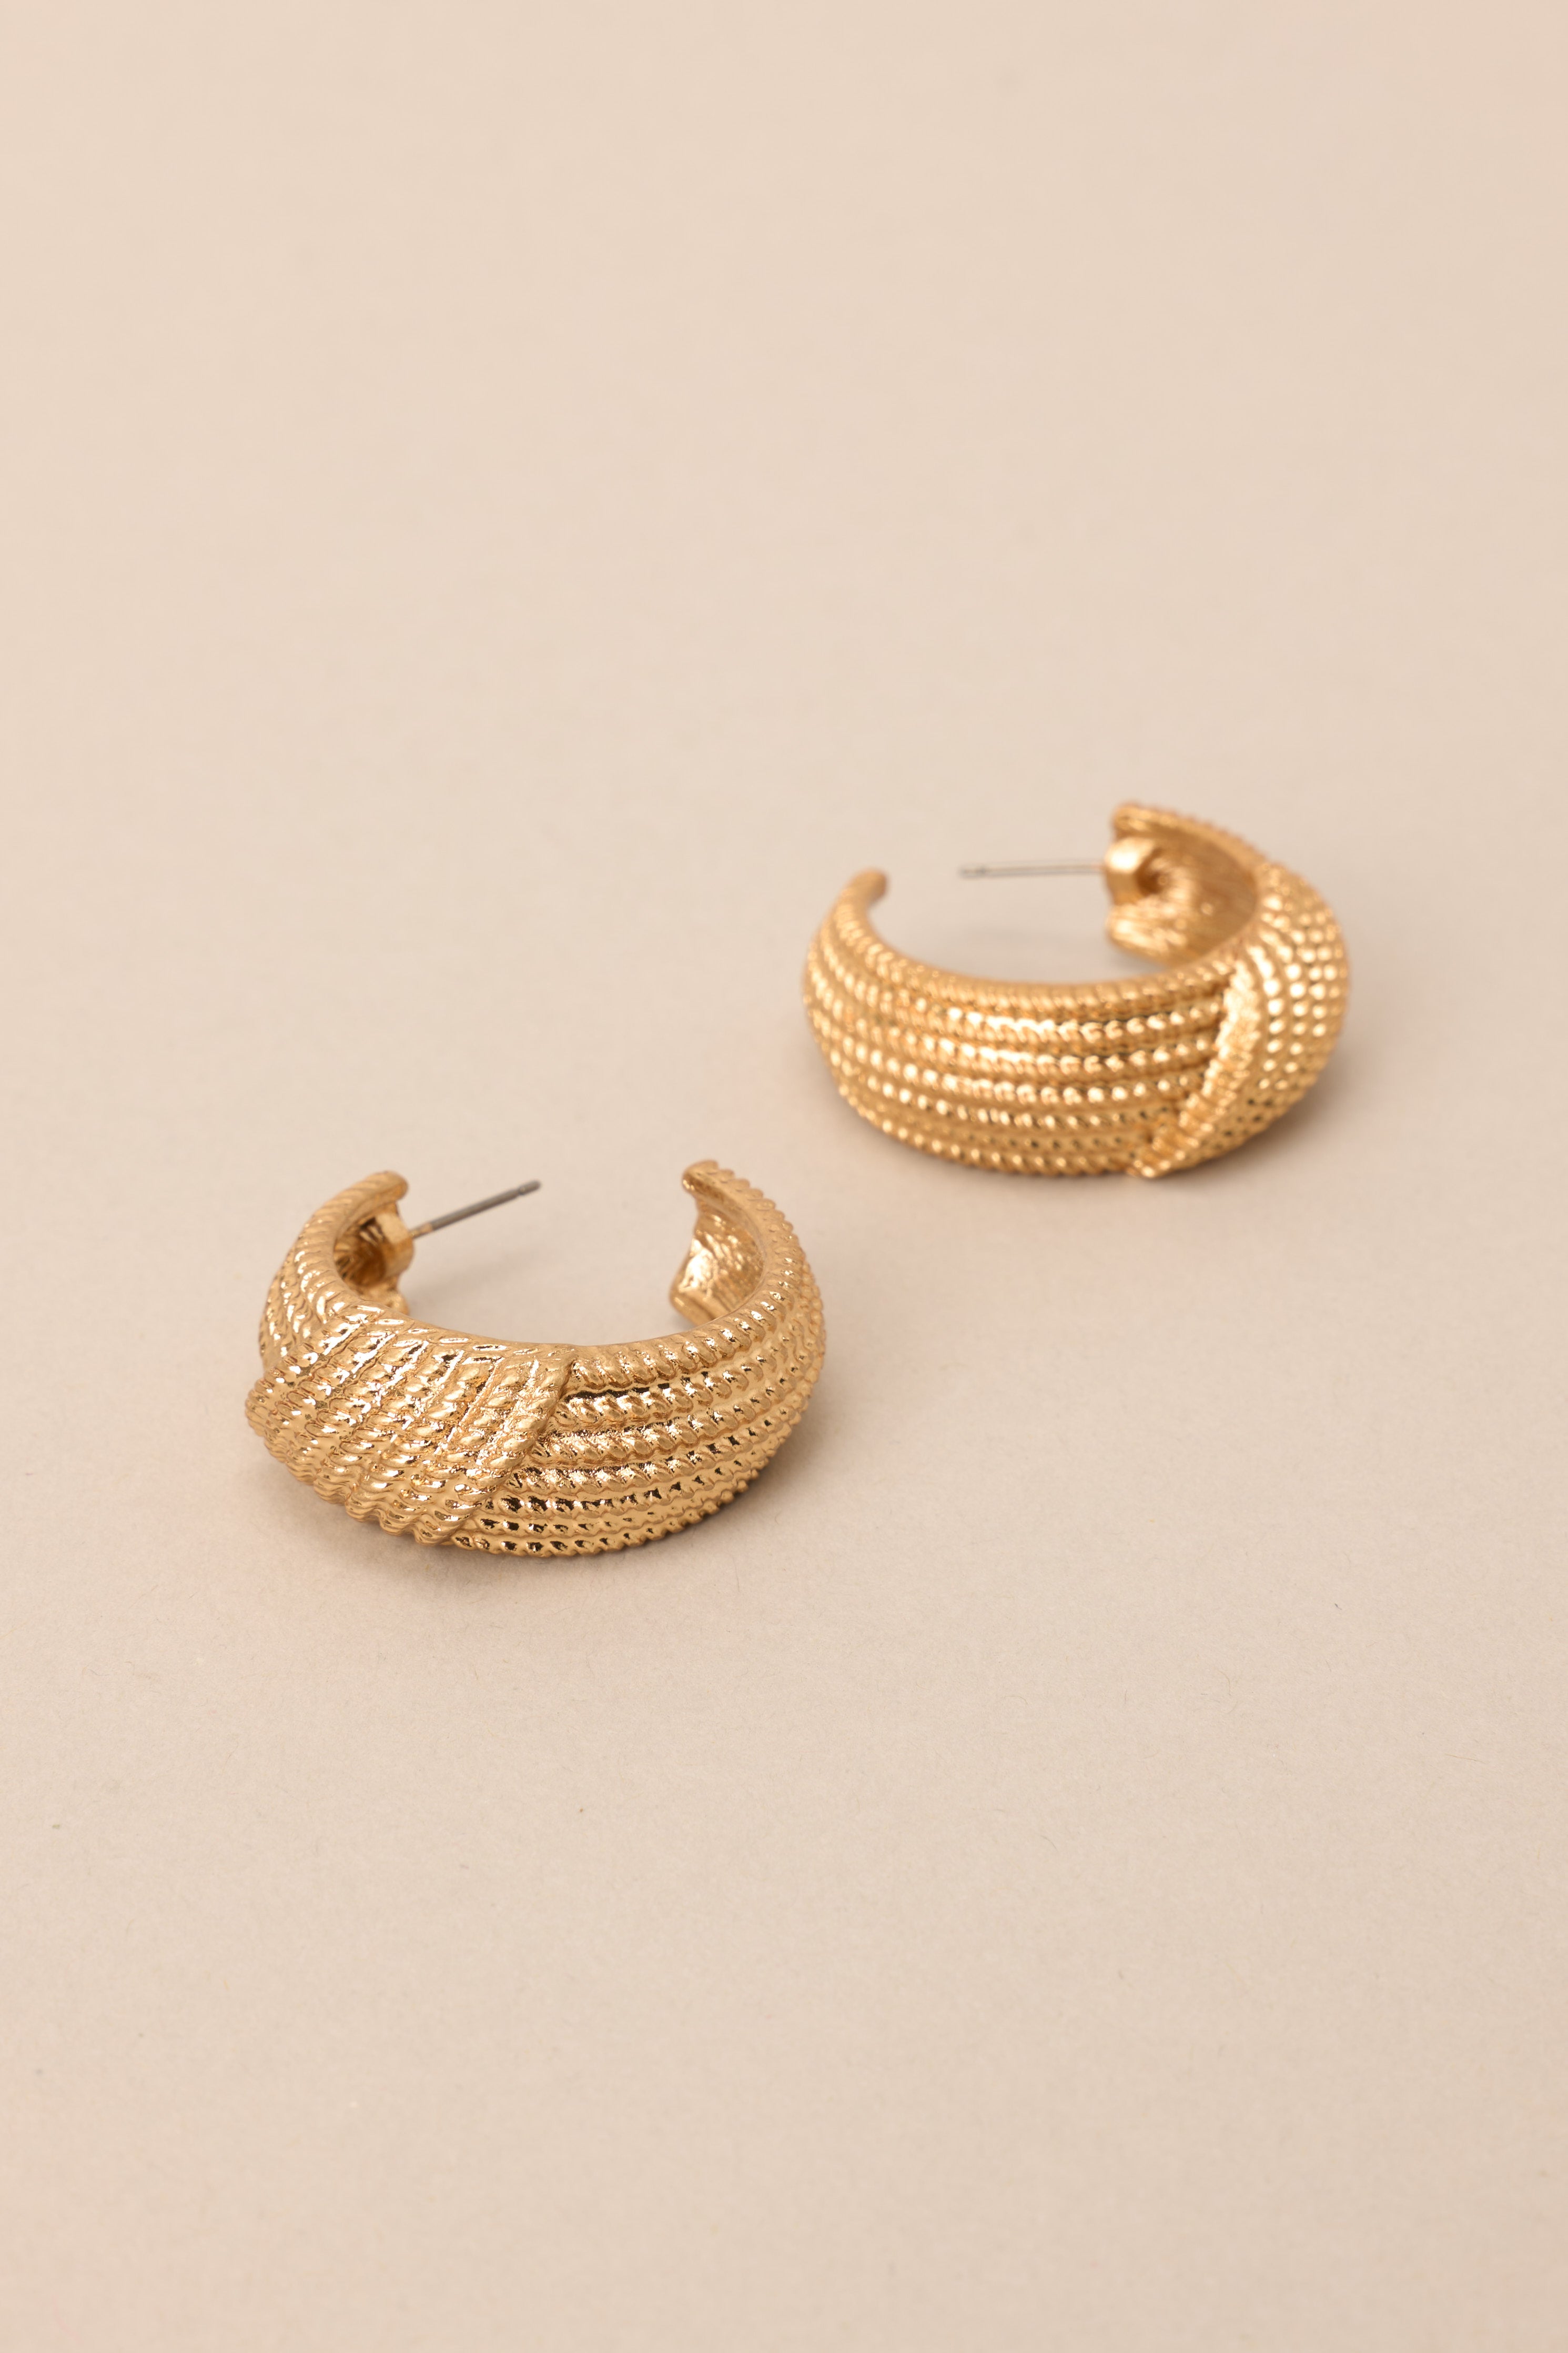 This Life Textured Vintage Gold Hoop Earrings